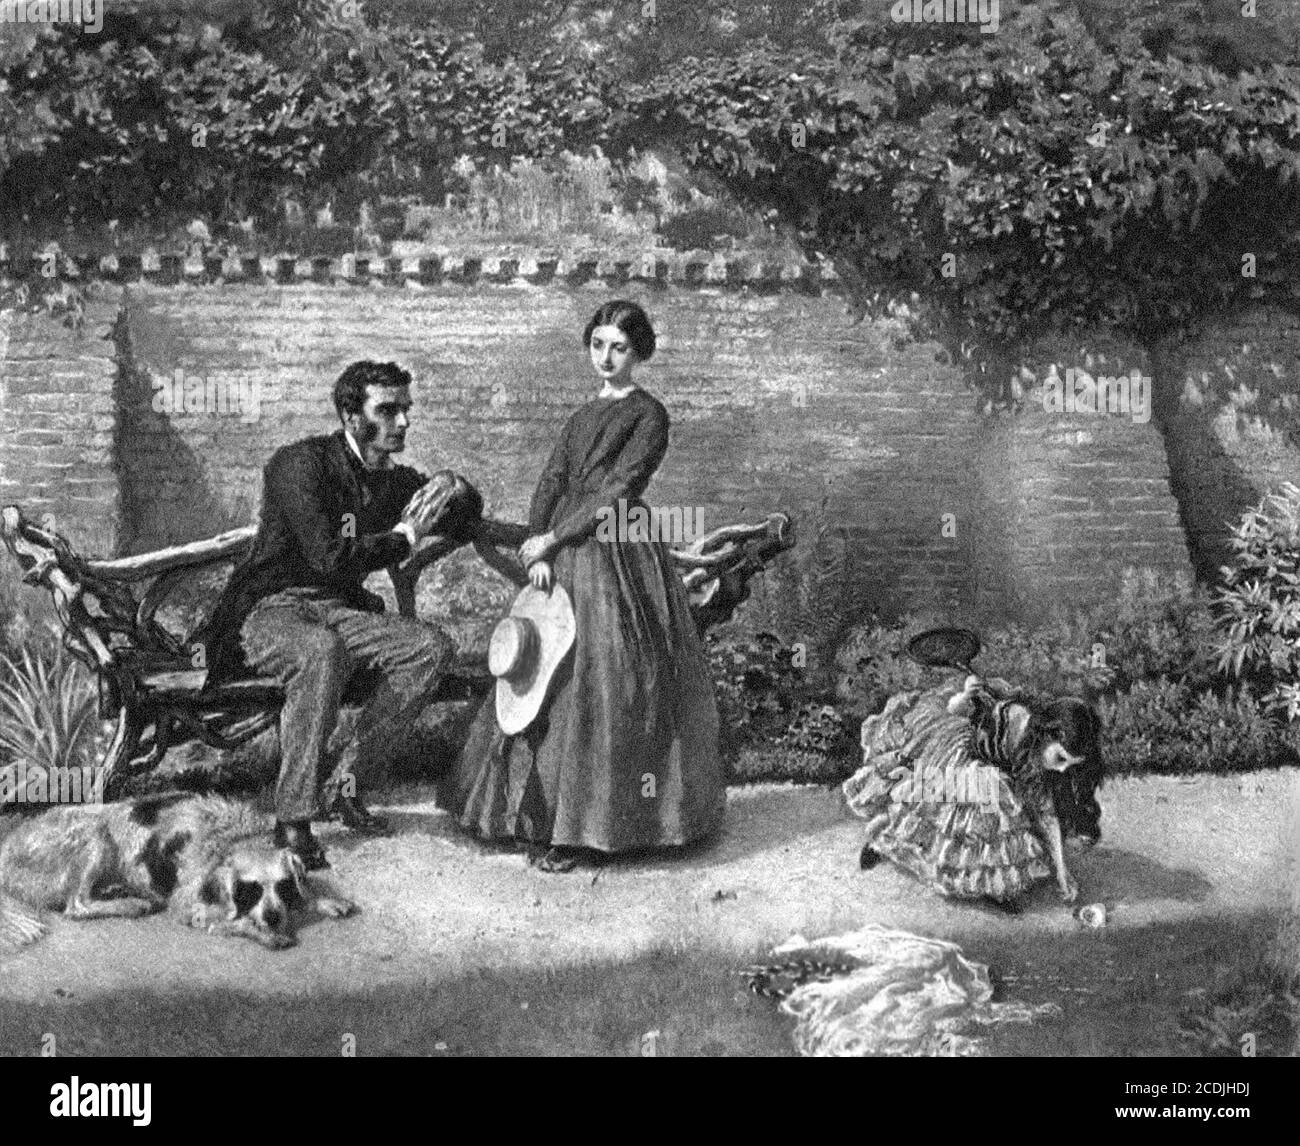 Rochester et Jane Eyre, d'un dessin aquarelle de Frederick Walker, 1899 Banque D'Images